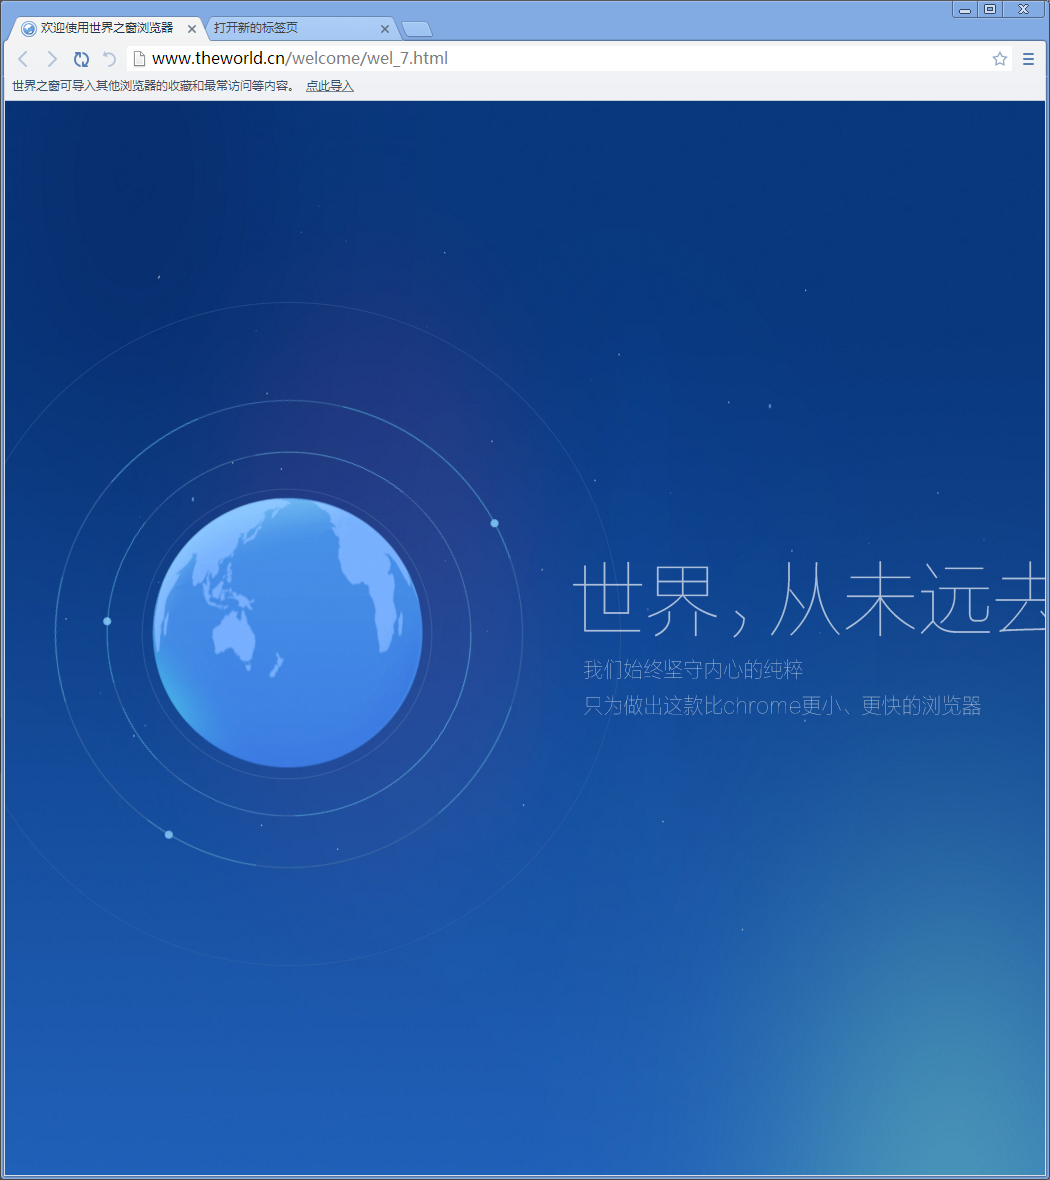 世界之窗浏览器下载PC版 - 世界之窗浏览器一键下载 7.0.0.108 电脑版 - 微当下载